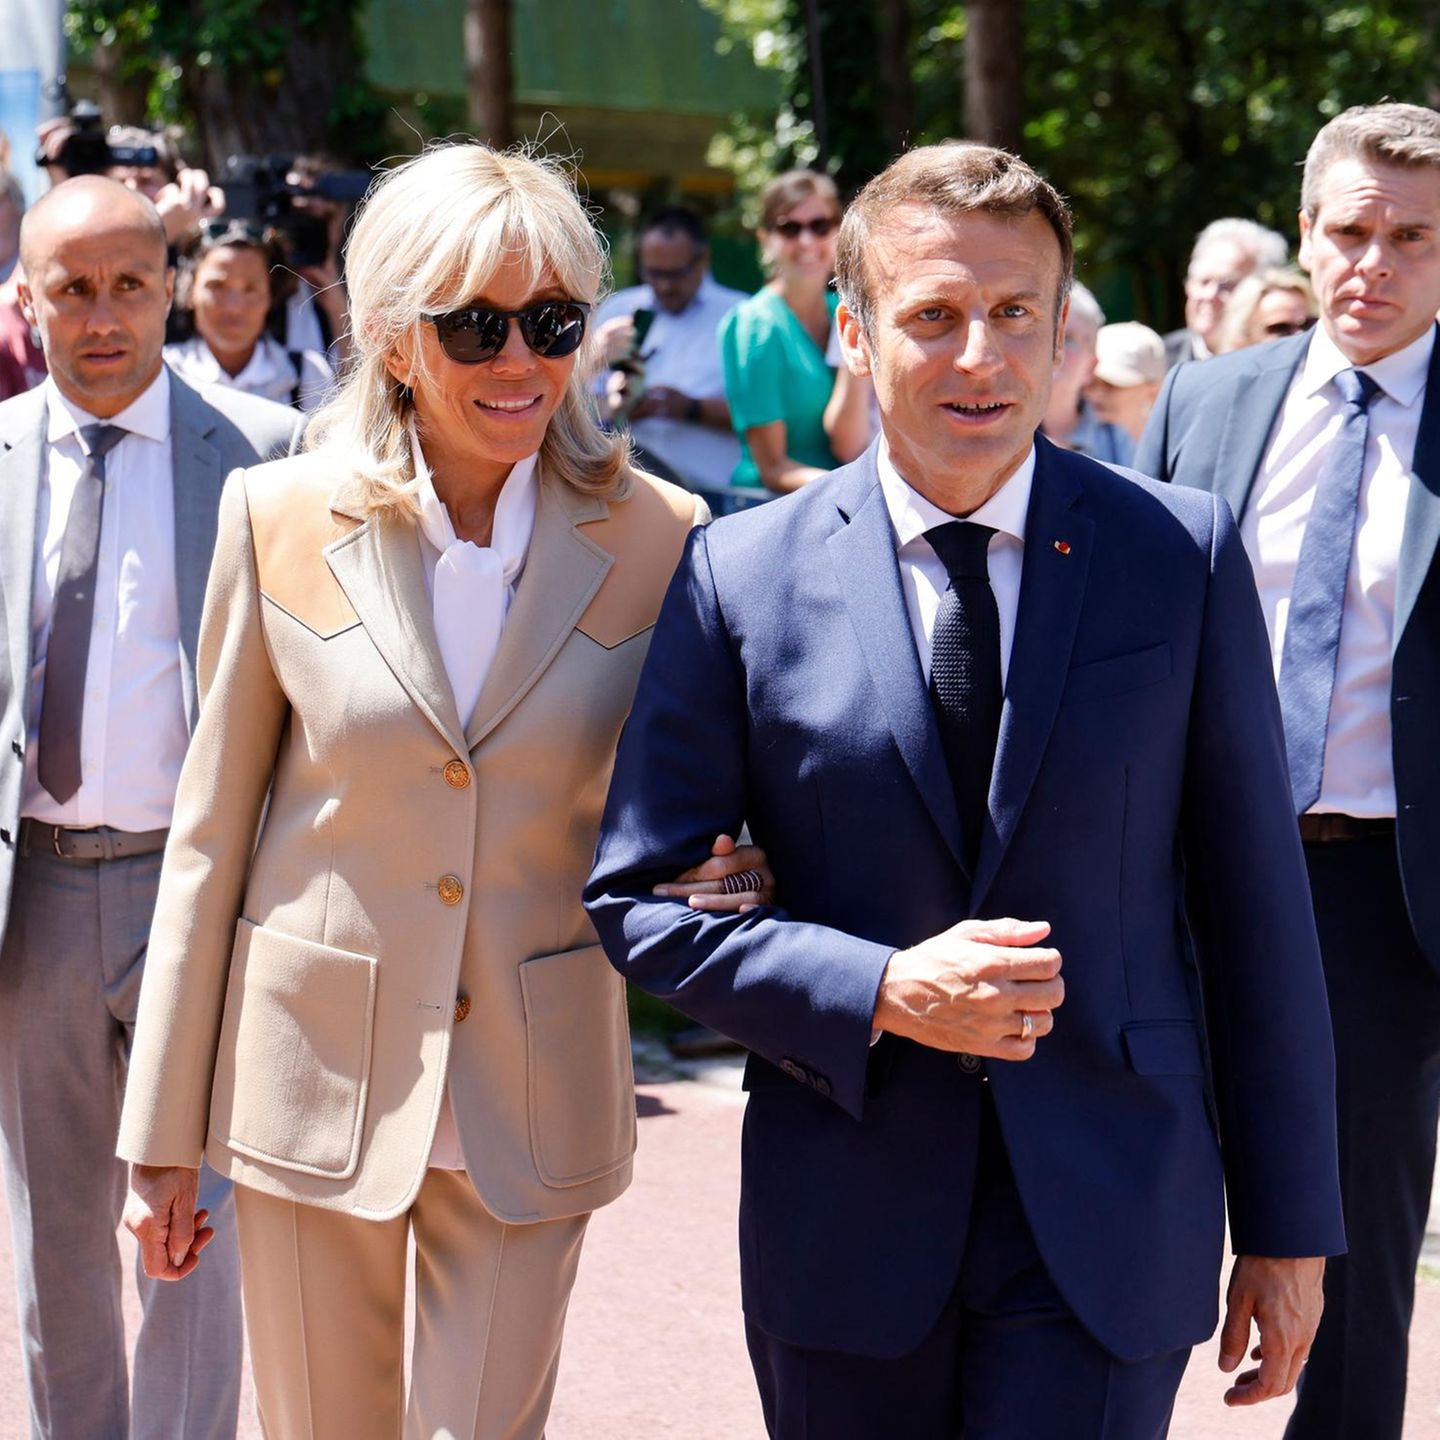 Zum Besuch eines Wahllokals stylt sich Brigitte Macron gewohnt elegant. Ihr Blazer in cremefarben ist tailliert geschnitten, bekommt durch Lederapplikationen an den Schultern ein interessantes Upgrade. Dazu trägt die Ehefrau des Amtsinhabers eine weiße Schluppenbluse.